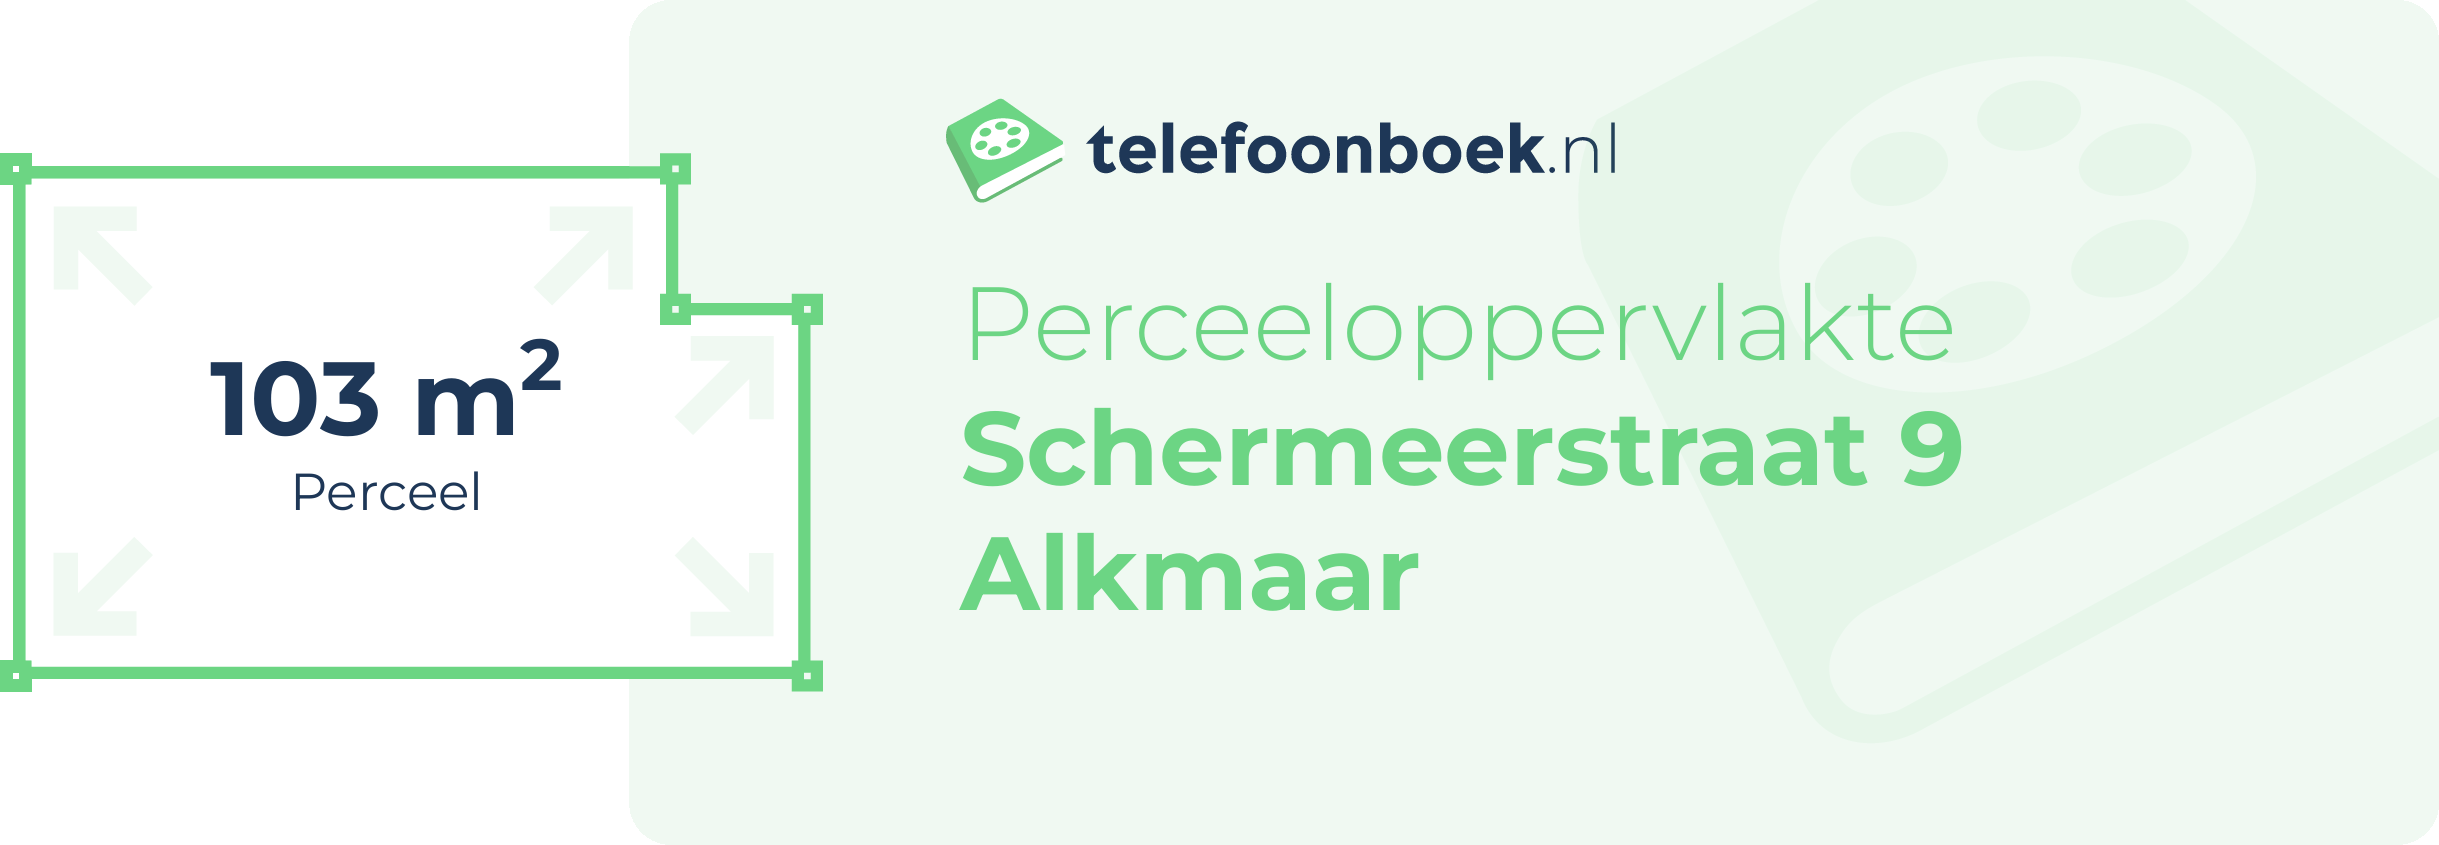 Perceeloppervlakte Schermeerstraat 9 Alkmaar